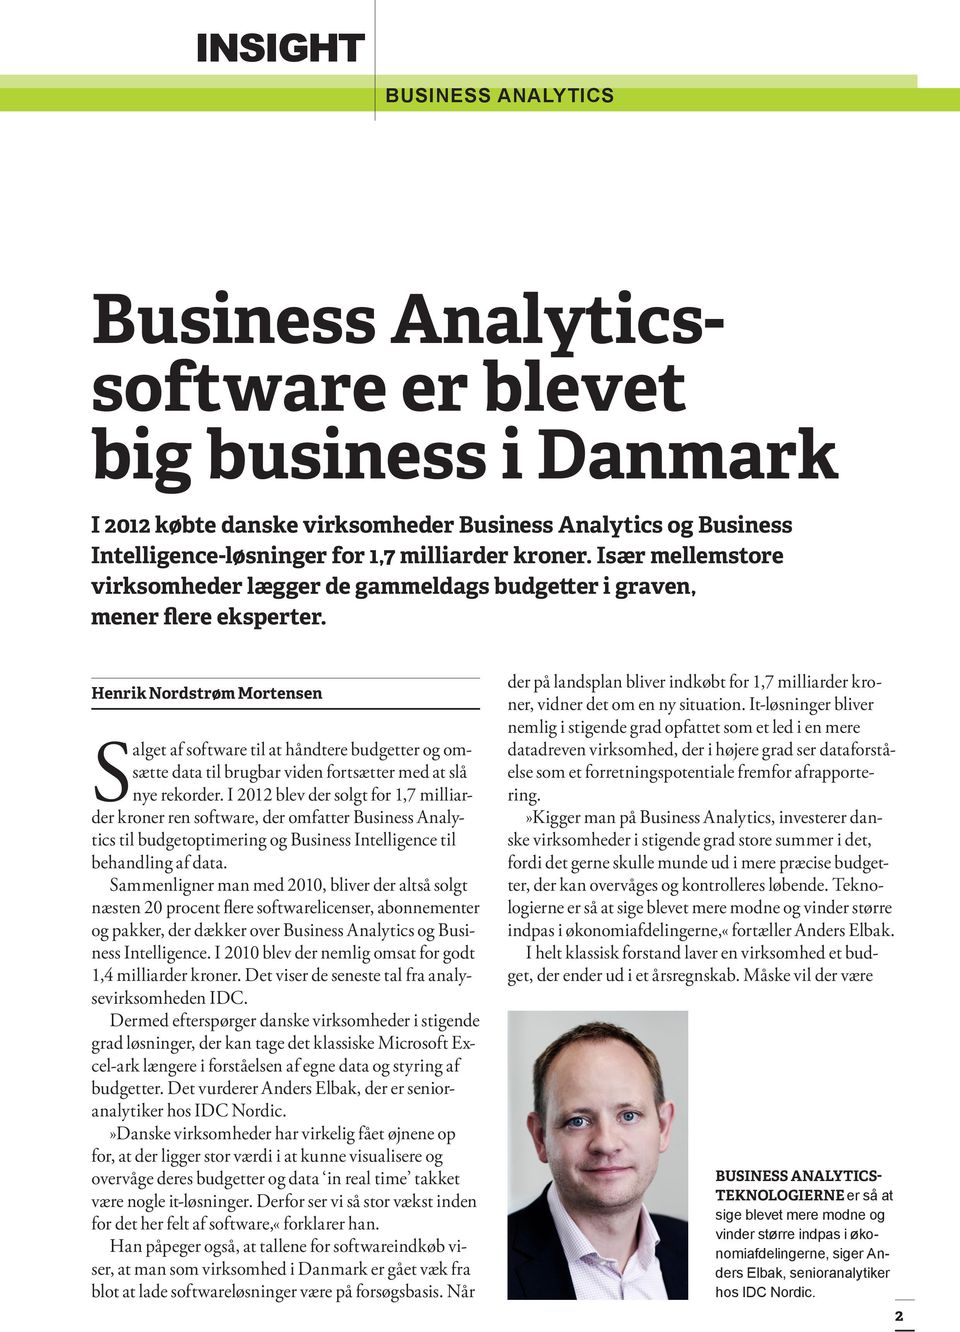 Henrik Nordstrøm Mortensen Salget af software til at håndtere budgetter og omsætte data til brugbar viden fortsætter med at slå nye rekorder.